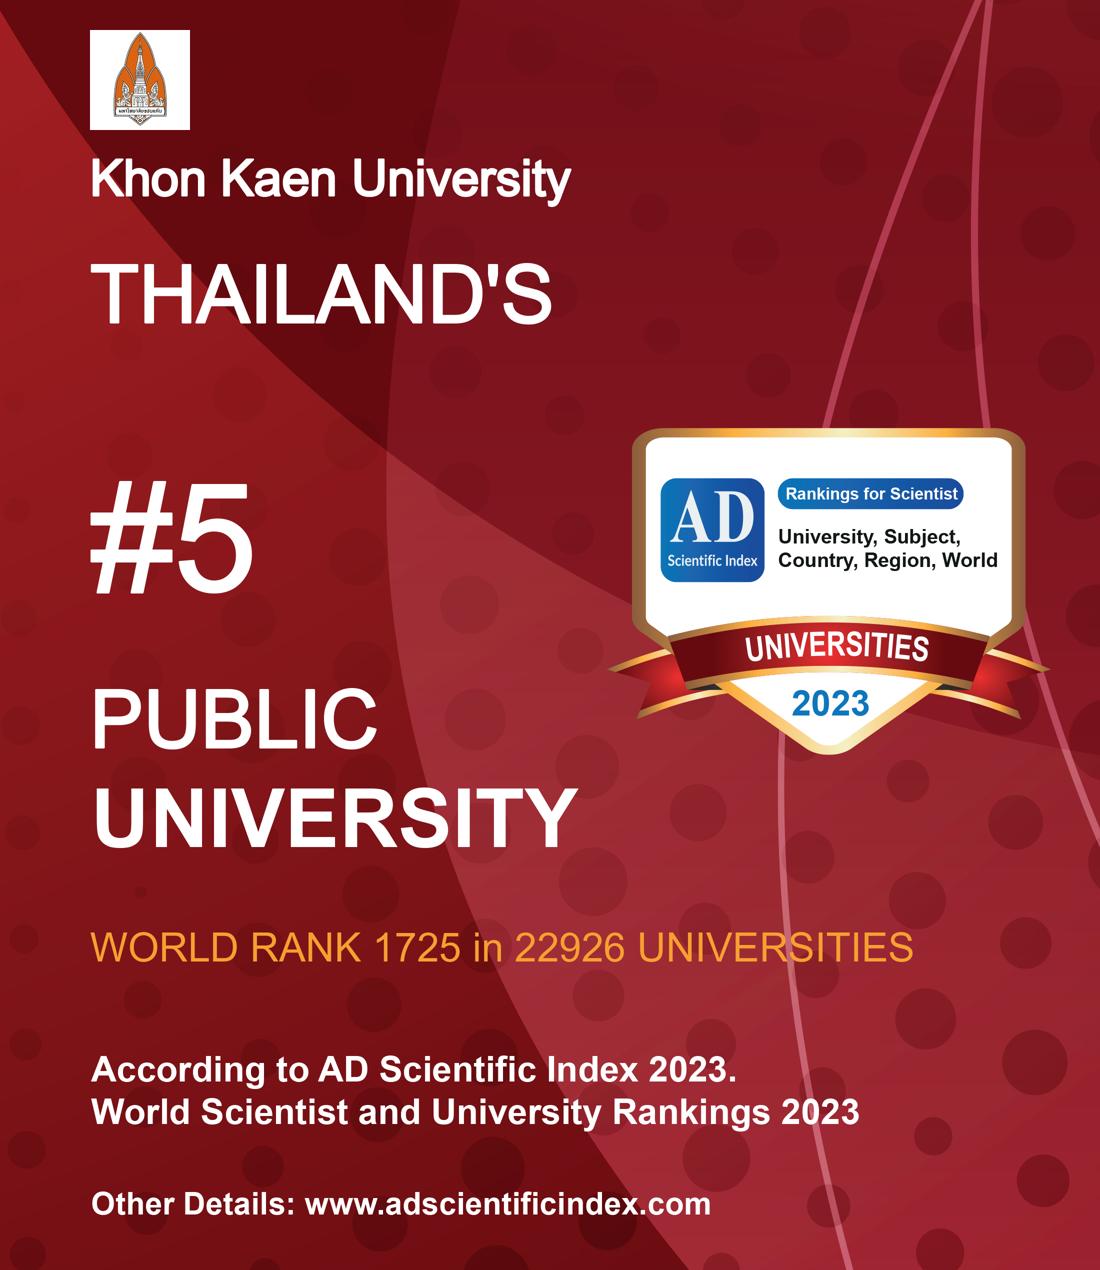 Khon Kaen University